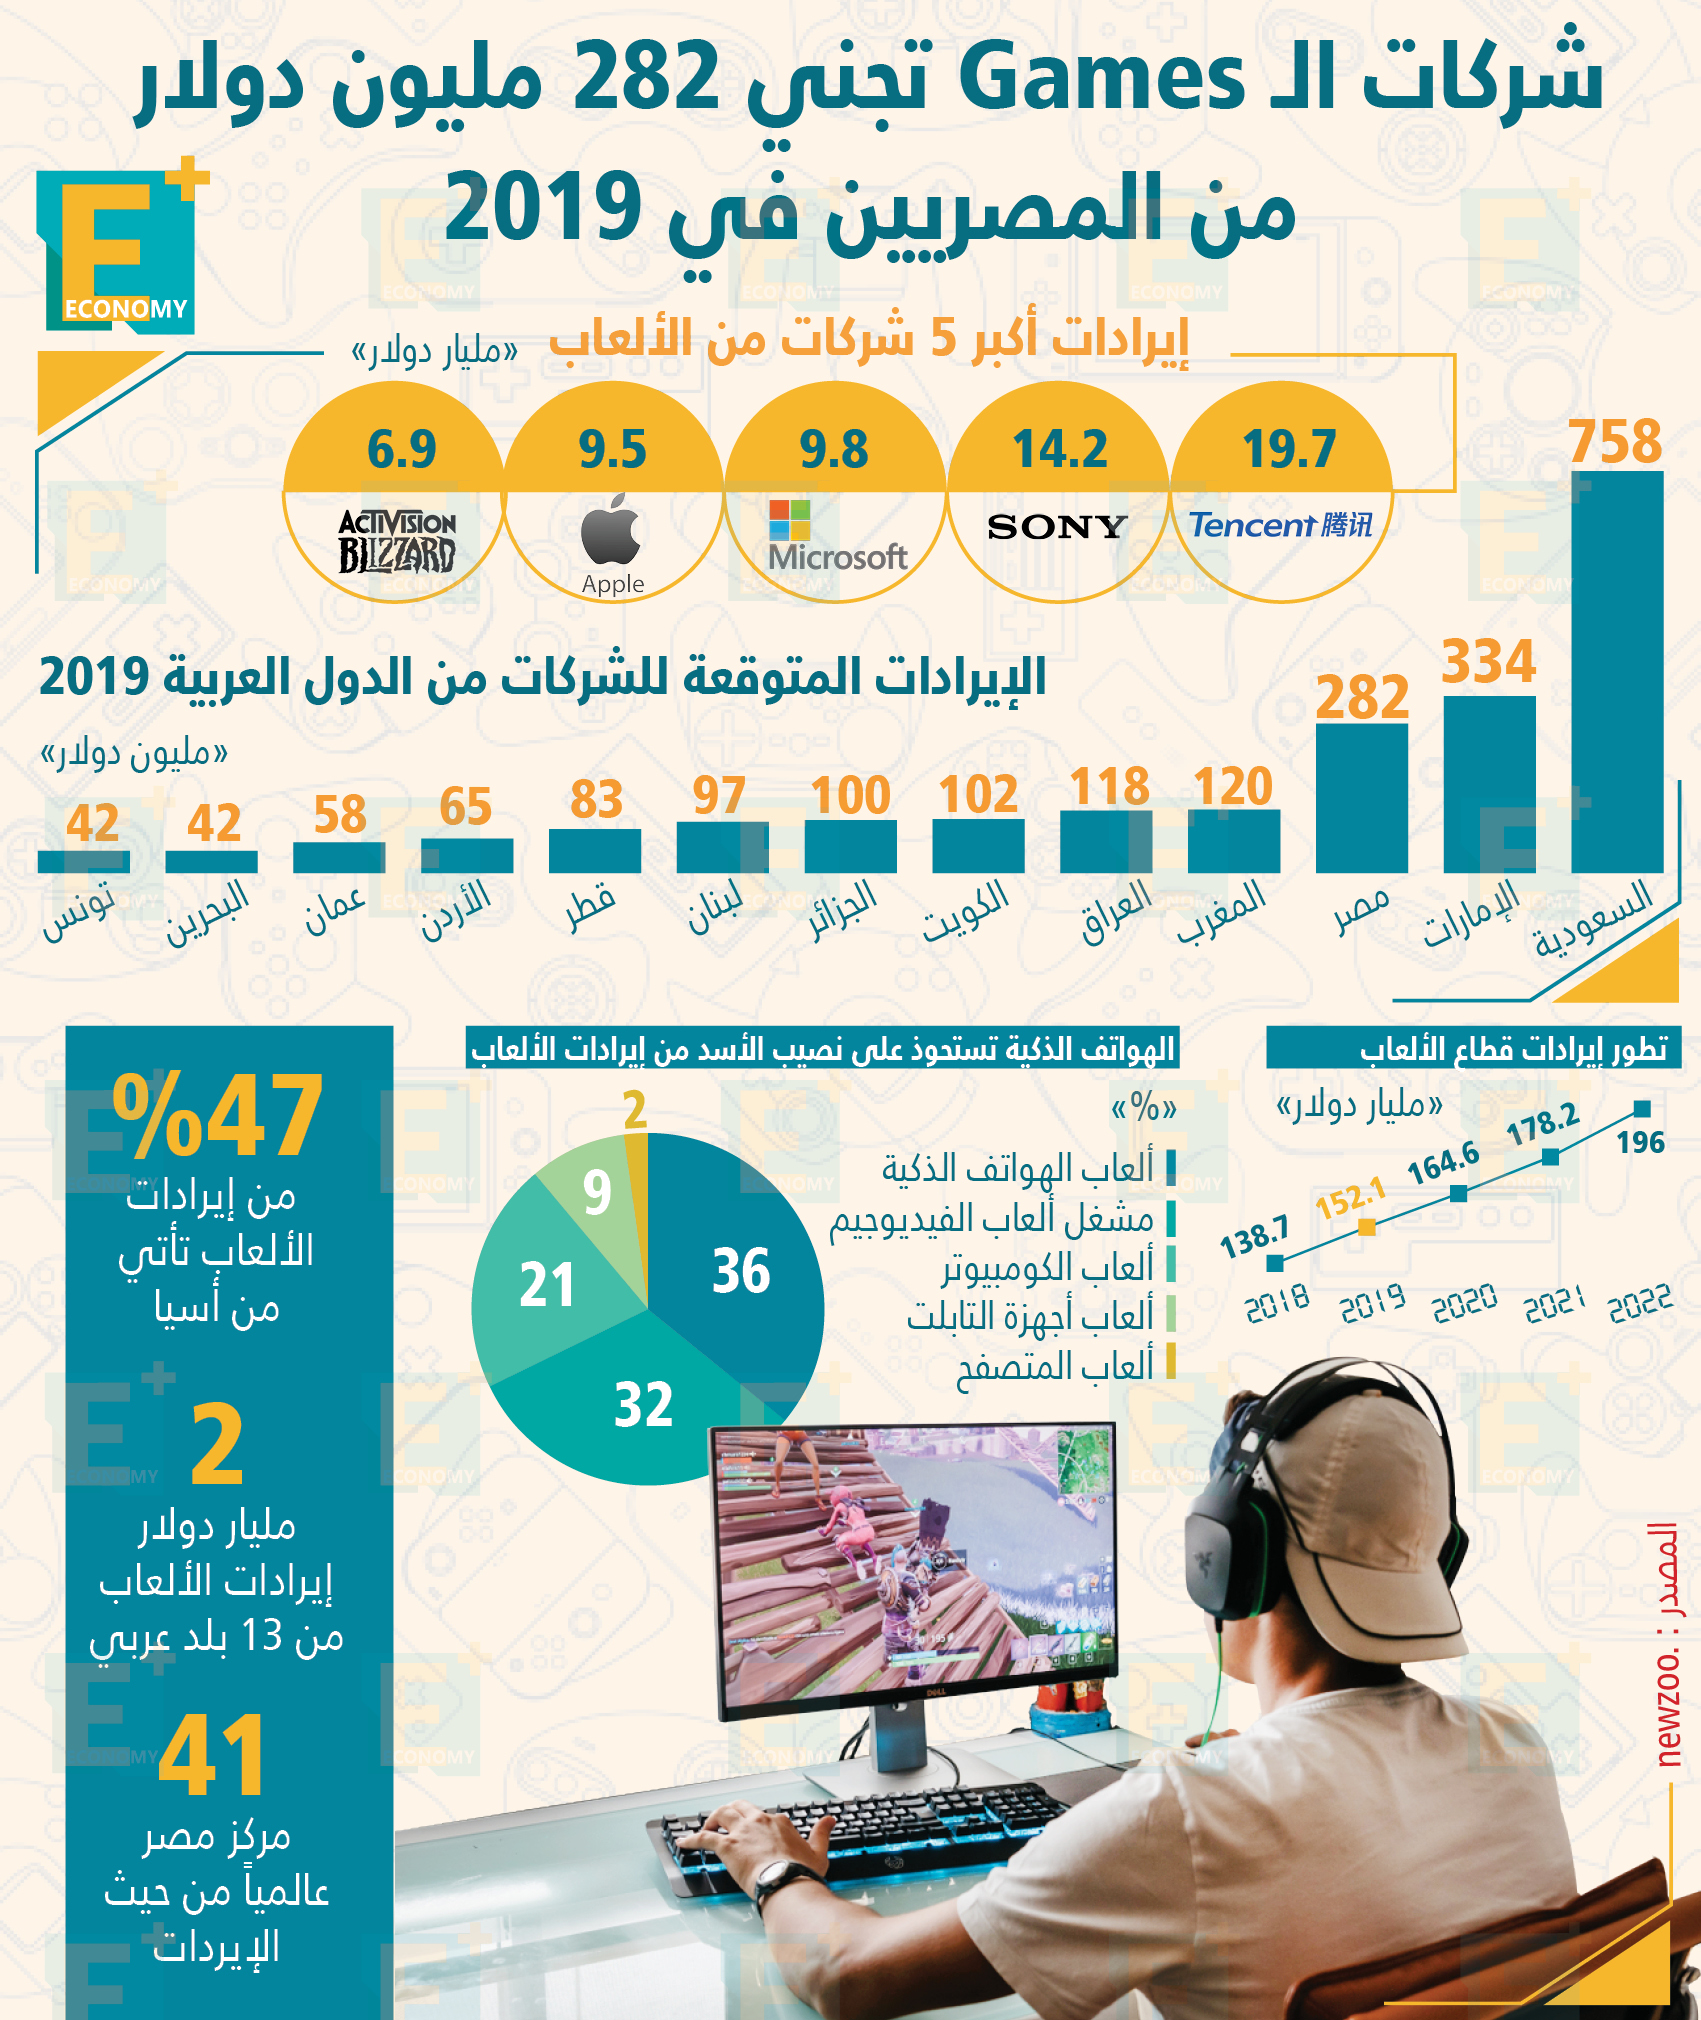 شركات الـ Games تجني 282 مليون دولار من المصريين في 2019